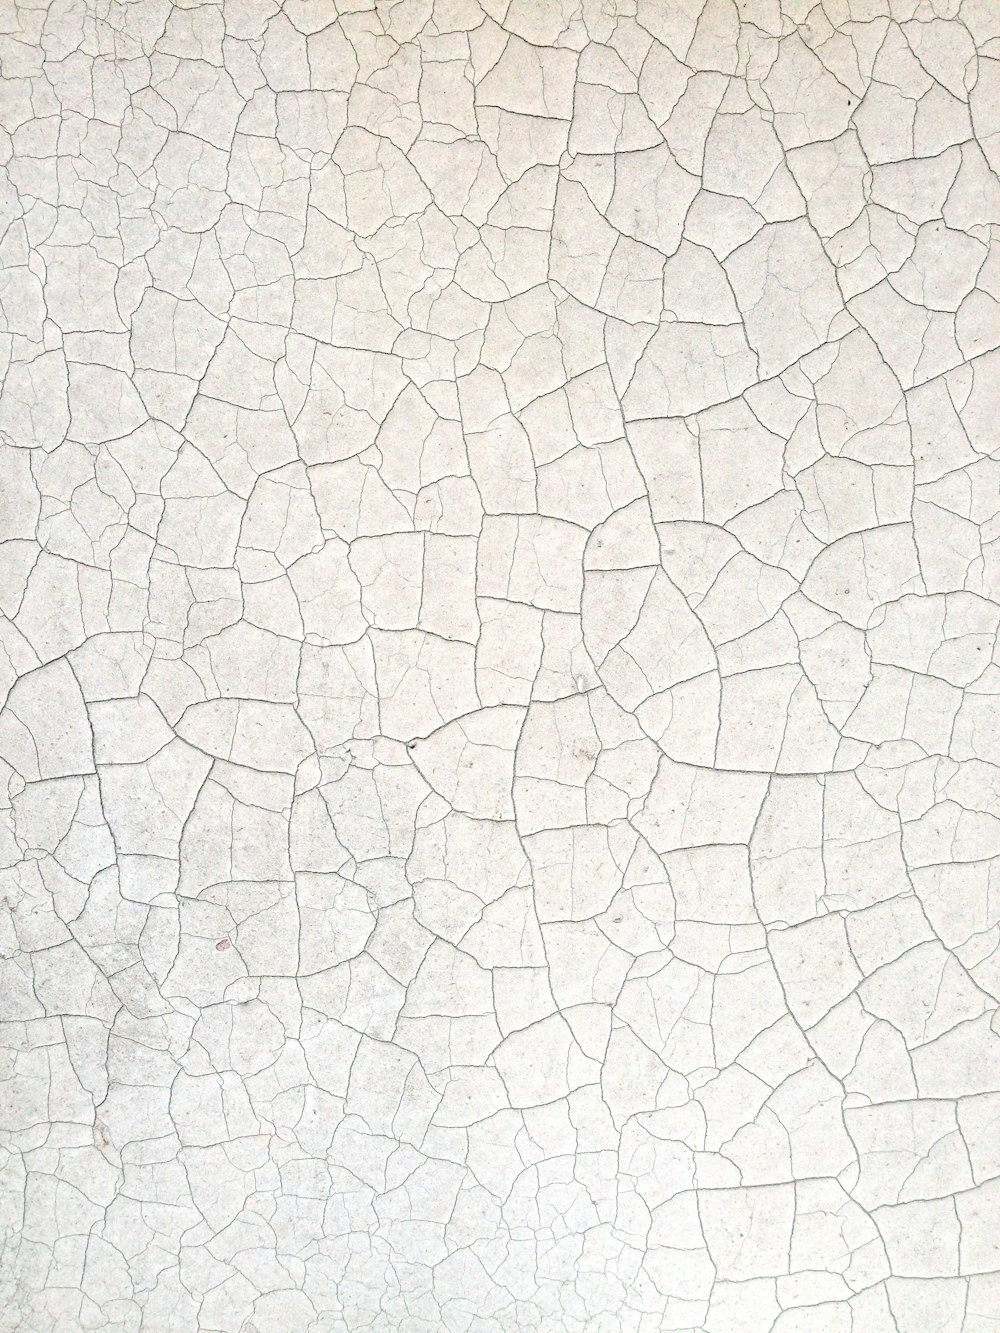 Un primer plano de una pared blanca con grietas en ella